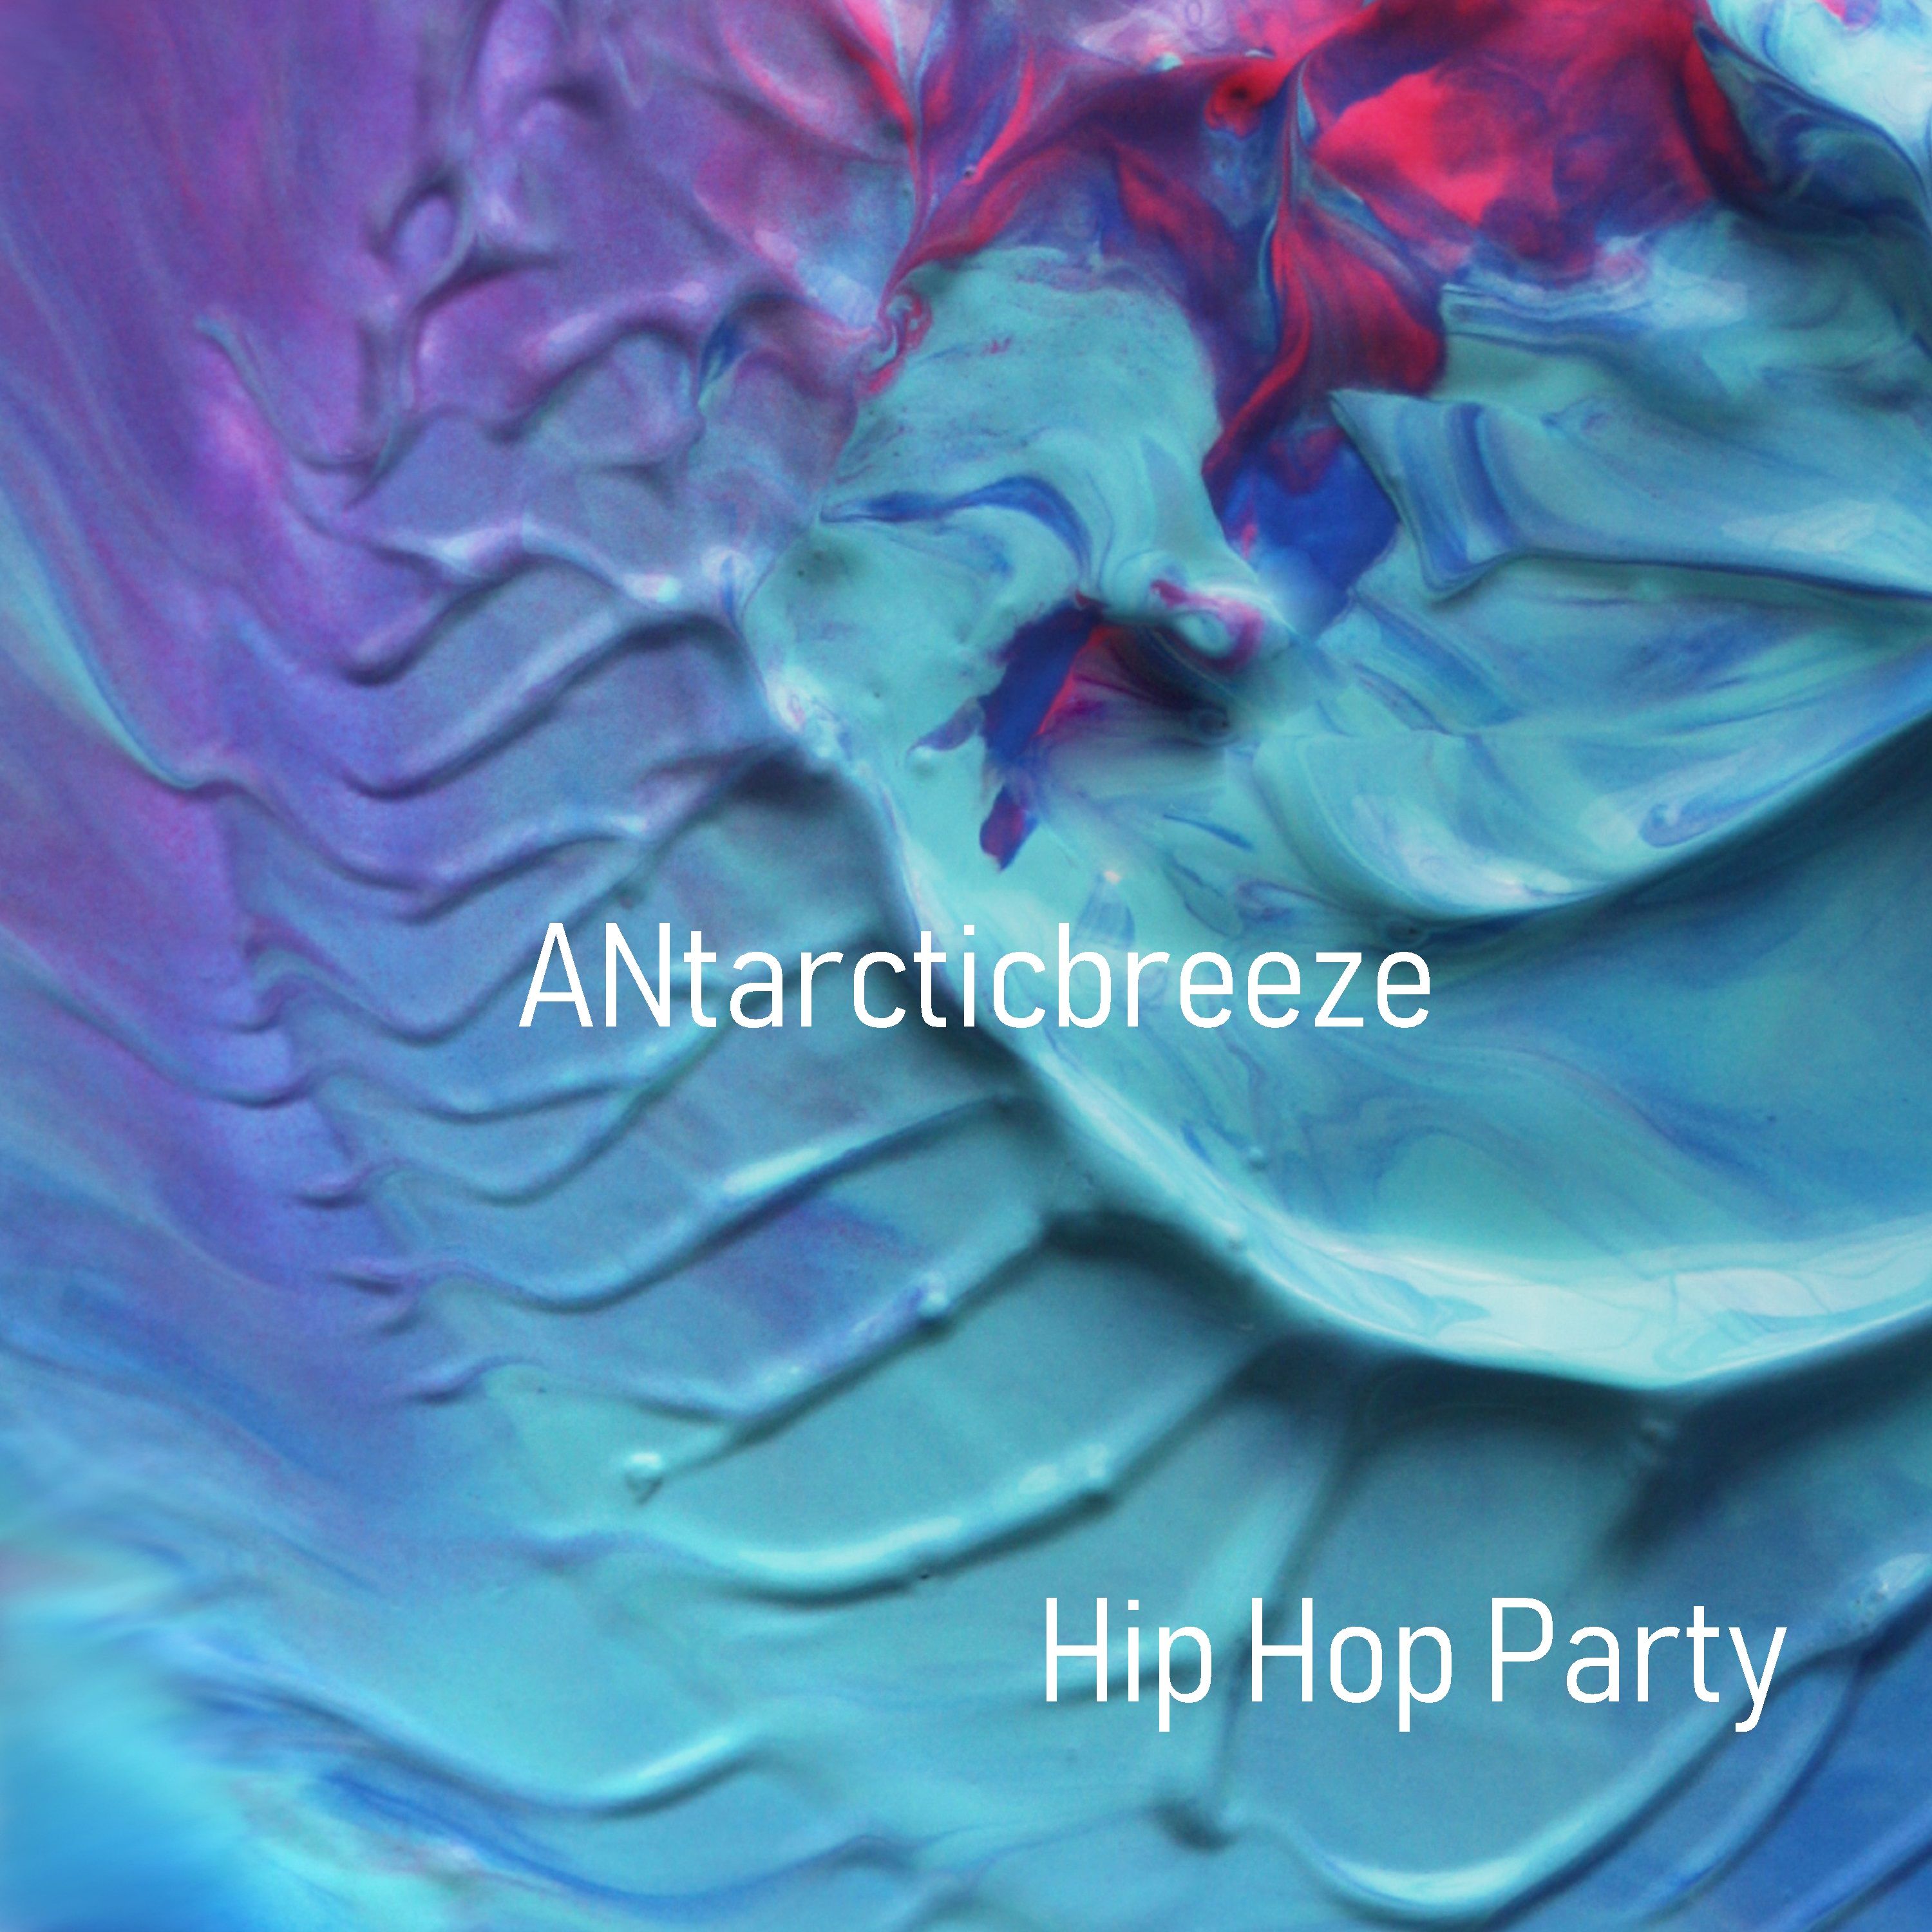 Ներբեռնե Hip Hop Party - Positive (Unlimit Use Music) by ANtarcticbreeze